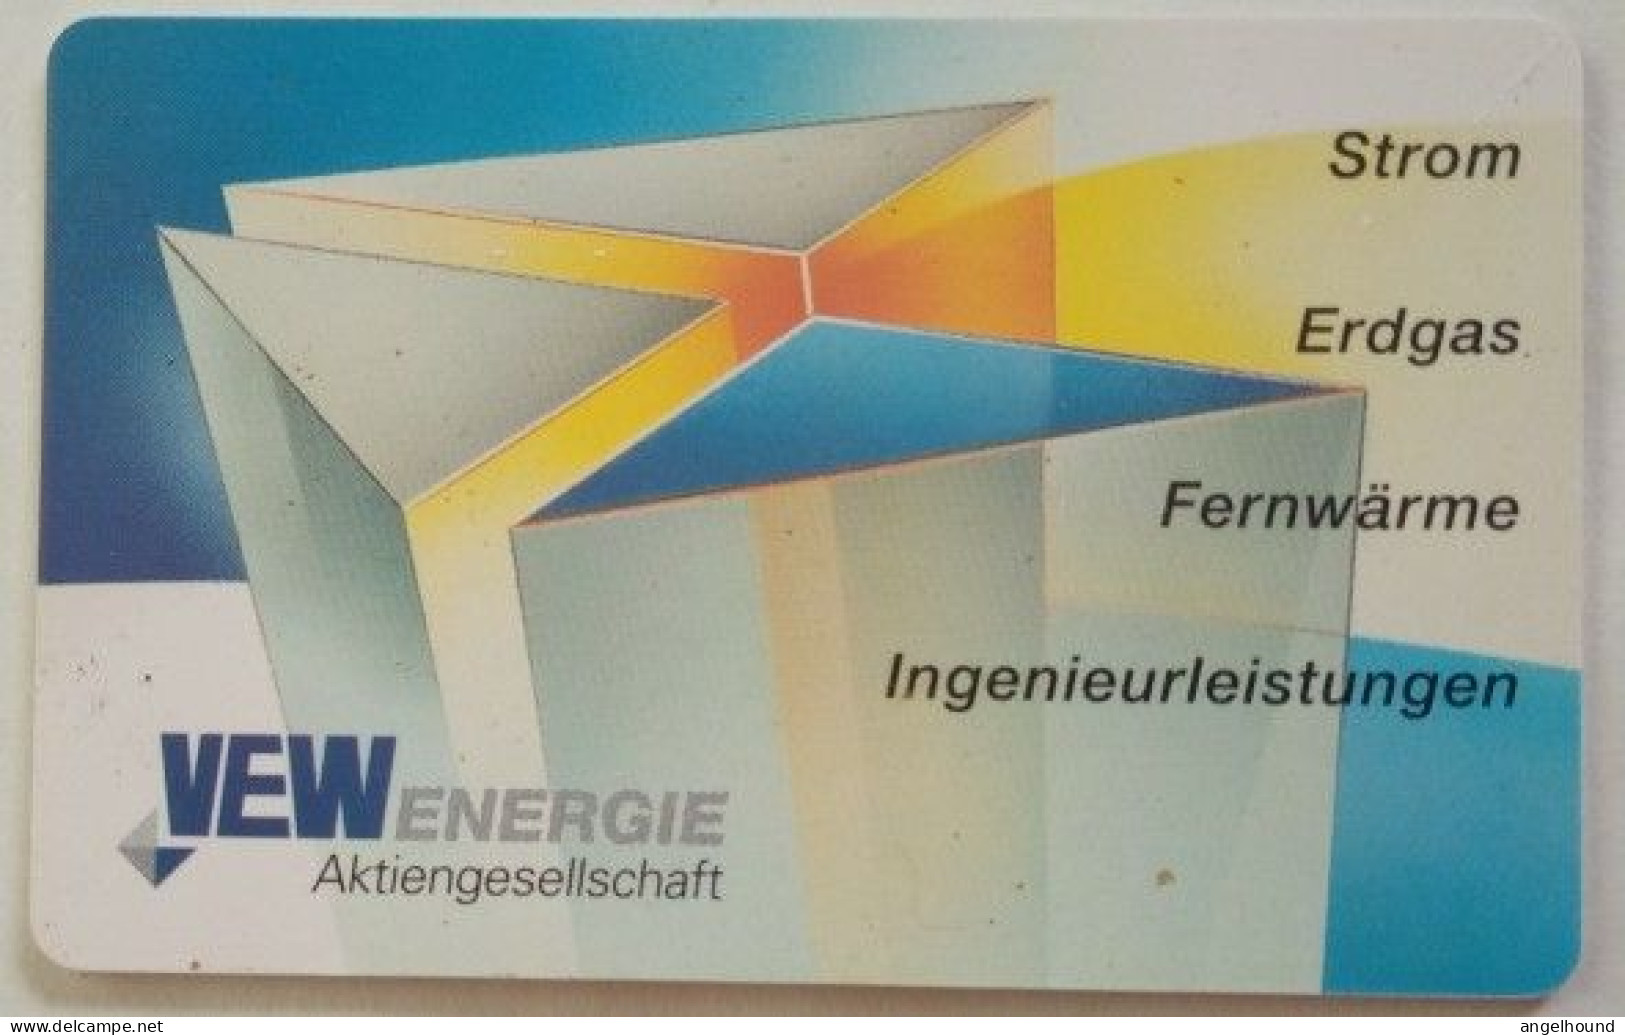 Germany  6DM MINT O 163  3.96 1000 Mintage - Vew Energie Bochum - O-Series: Kundenserie Vom Sammlerservice Ausgeschlossen